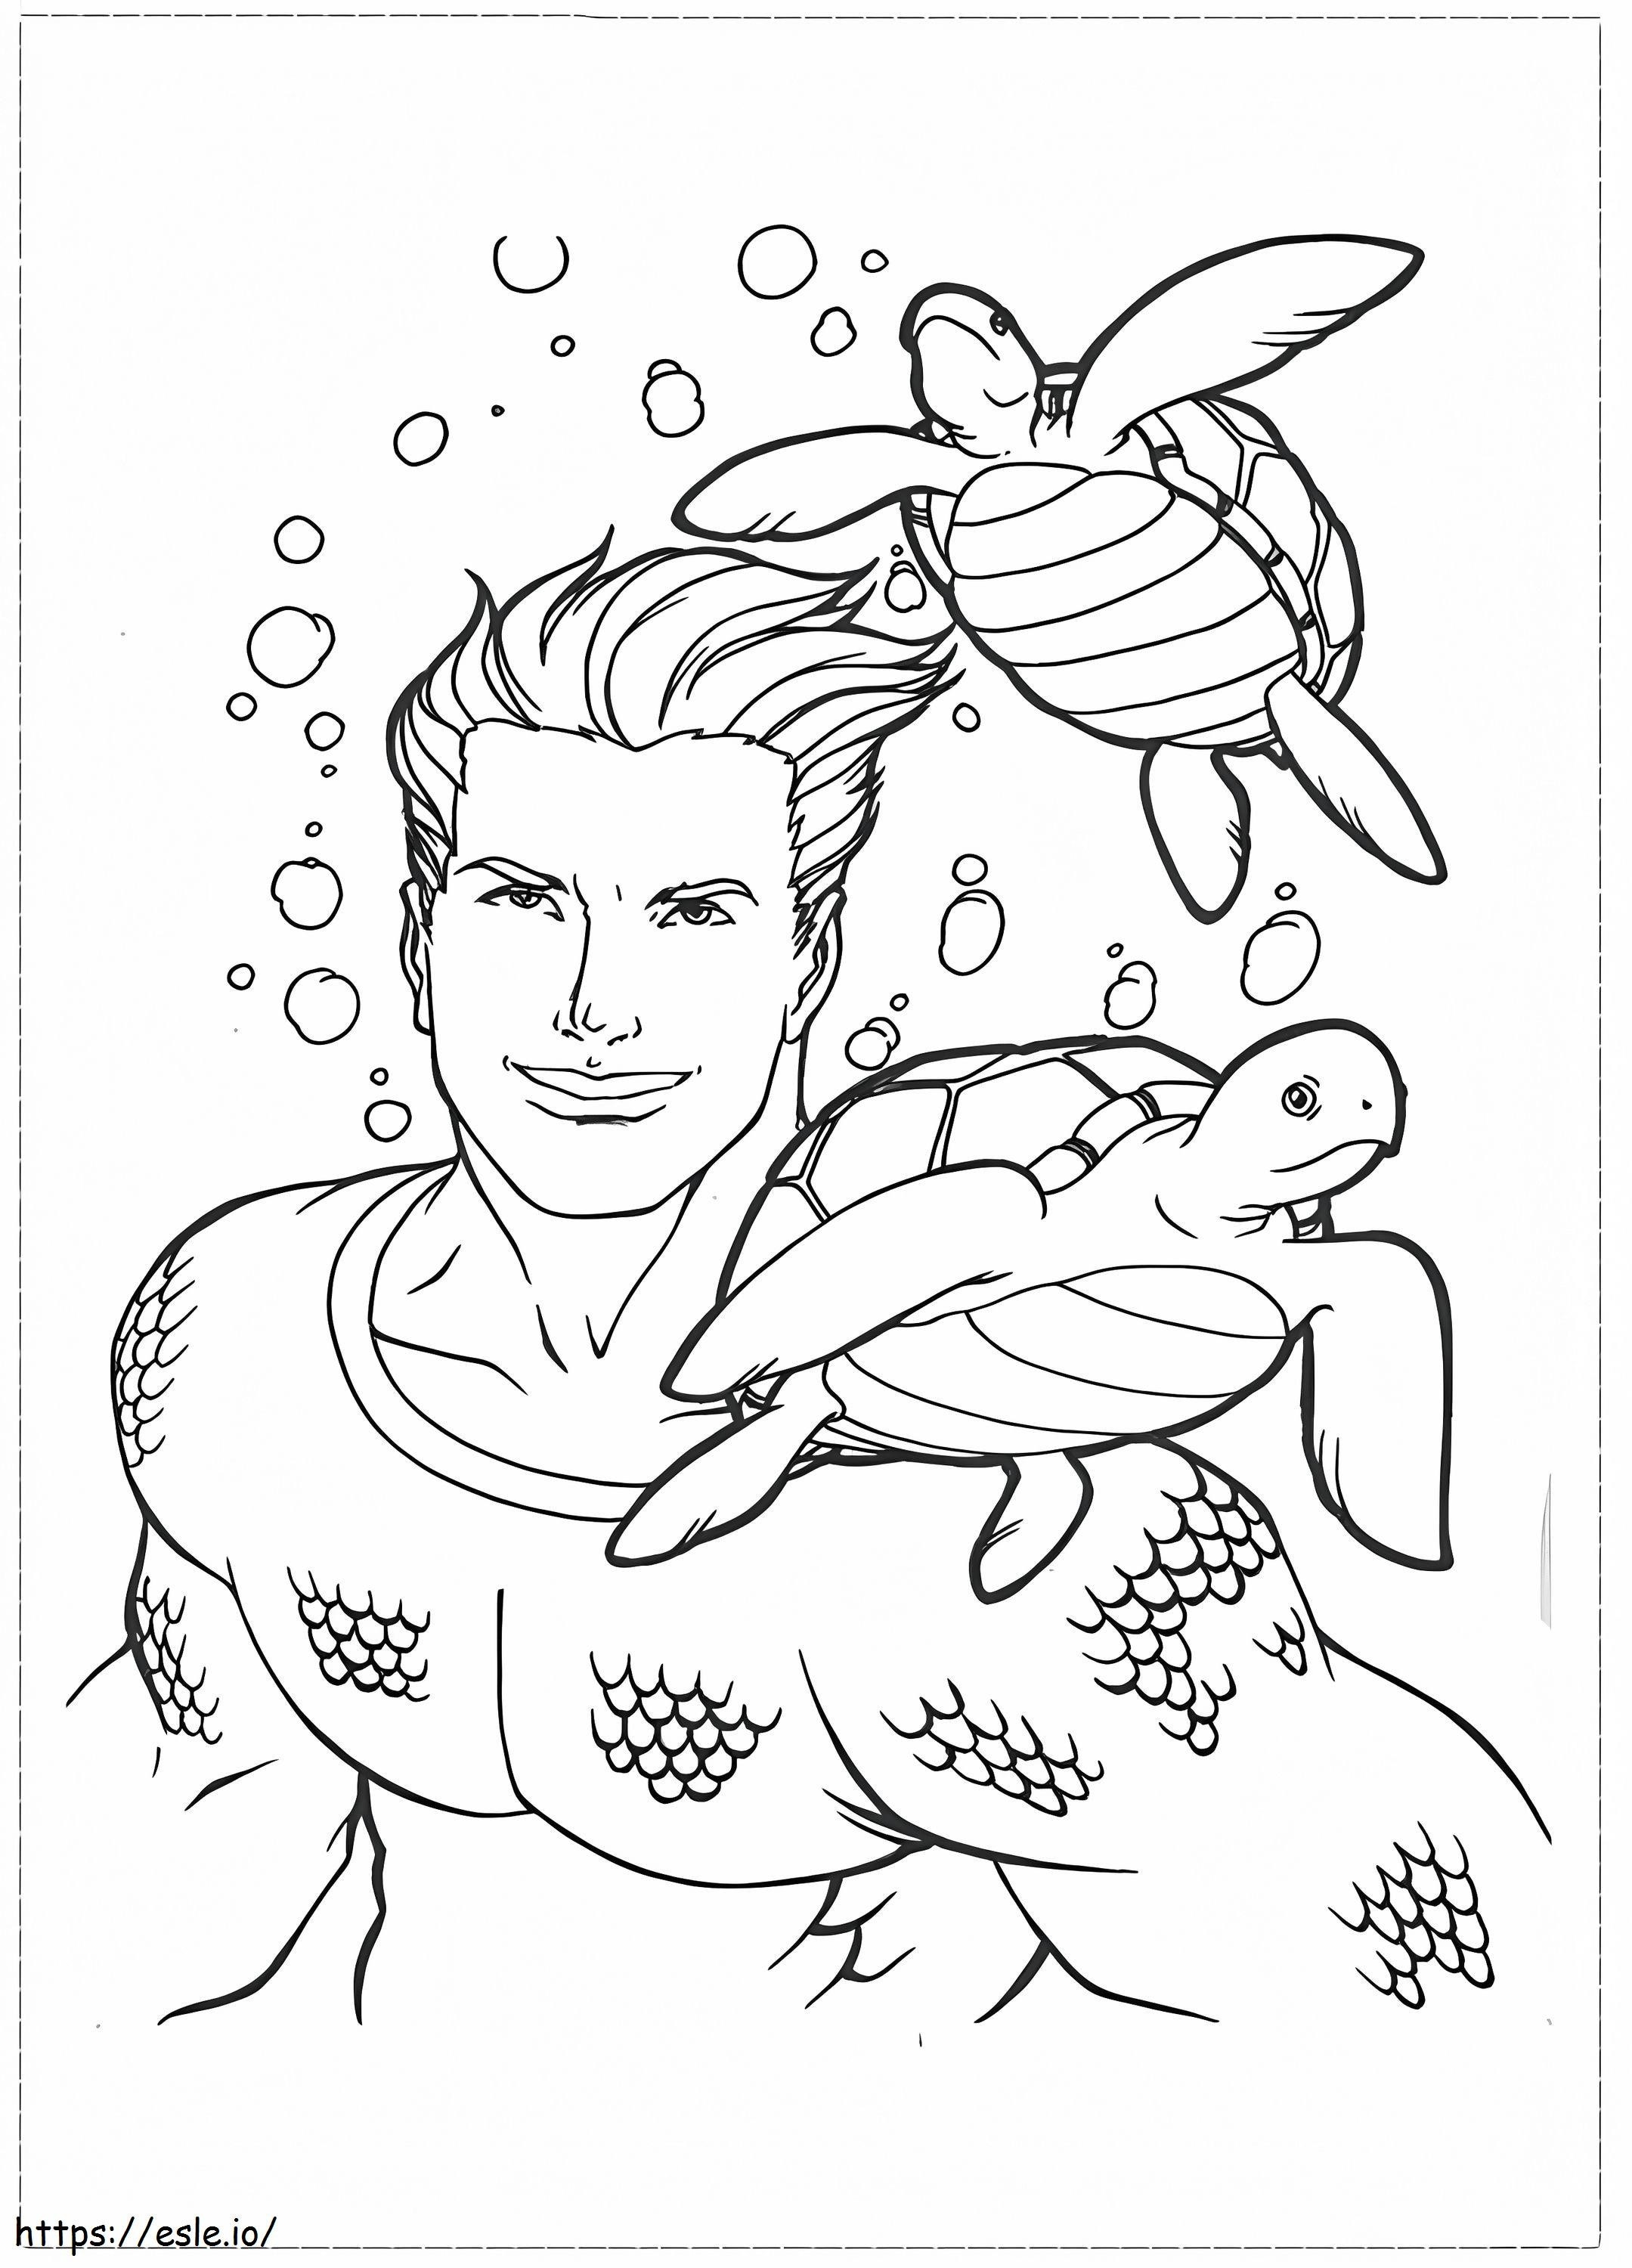 Aquaman y dos tortugas para colorear